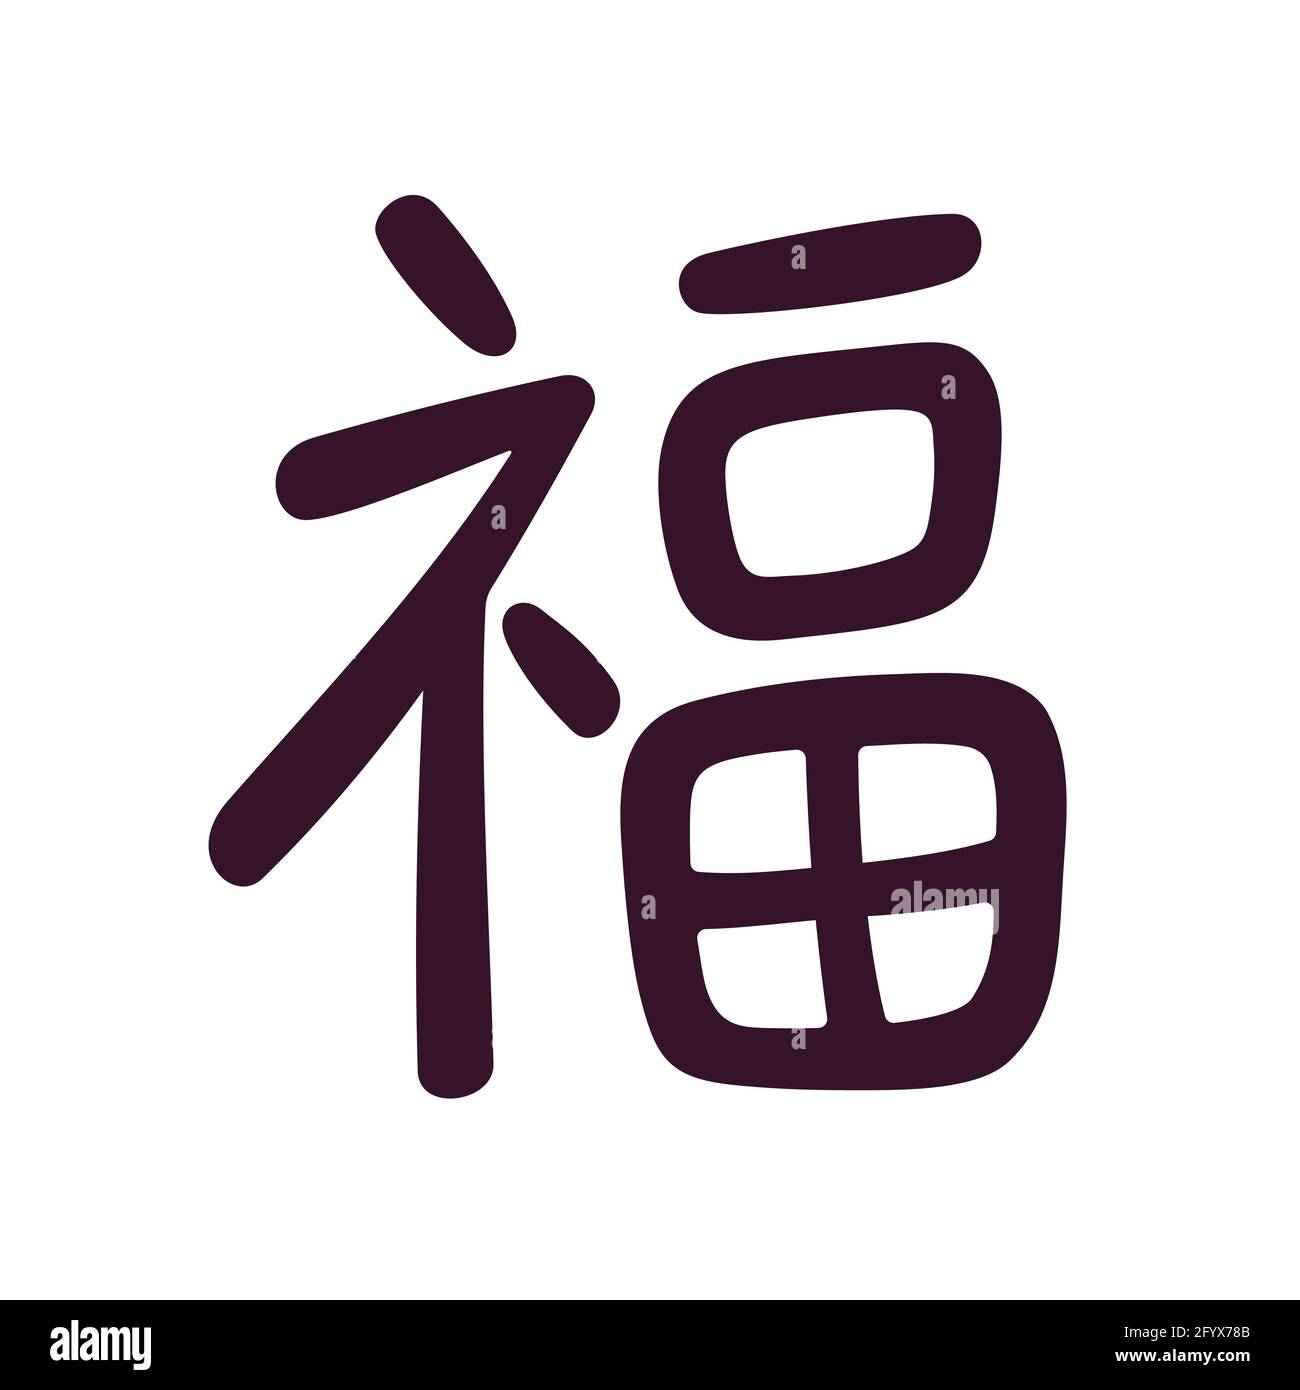 Carattere cinese 'fu' che significa 'fortuna' o 'buona fortuna'. Simbolo calligrafia di scrittura in stile semplice moderno. Immagine vettoriale clip art. Illustrazione Vettoriale